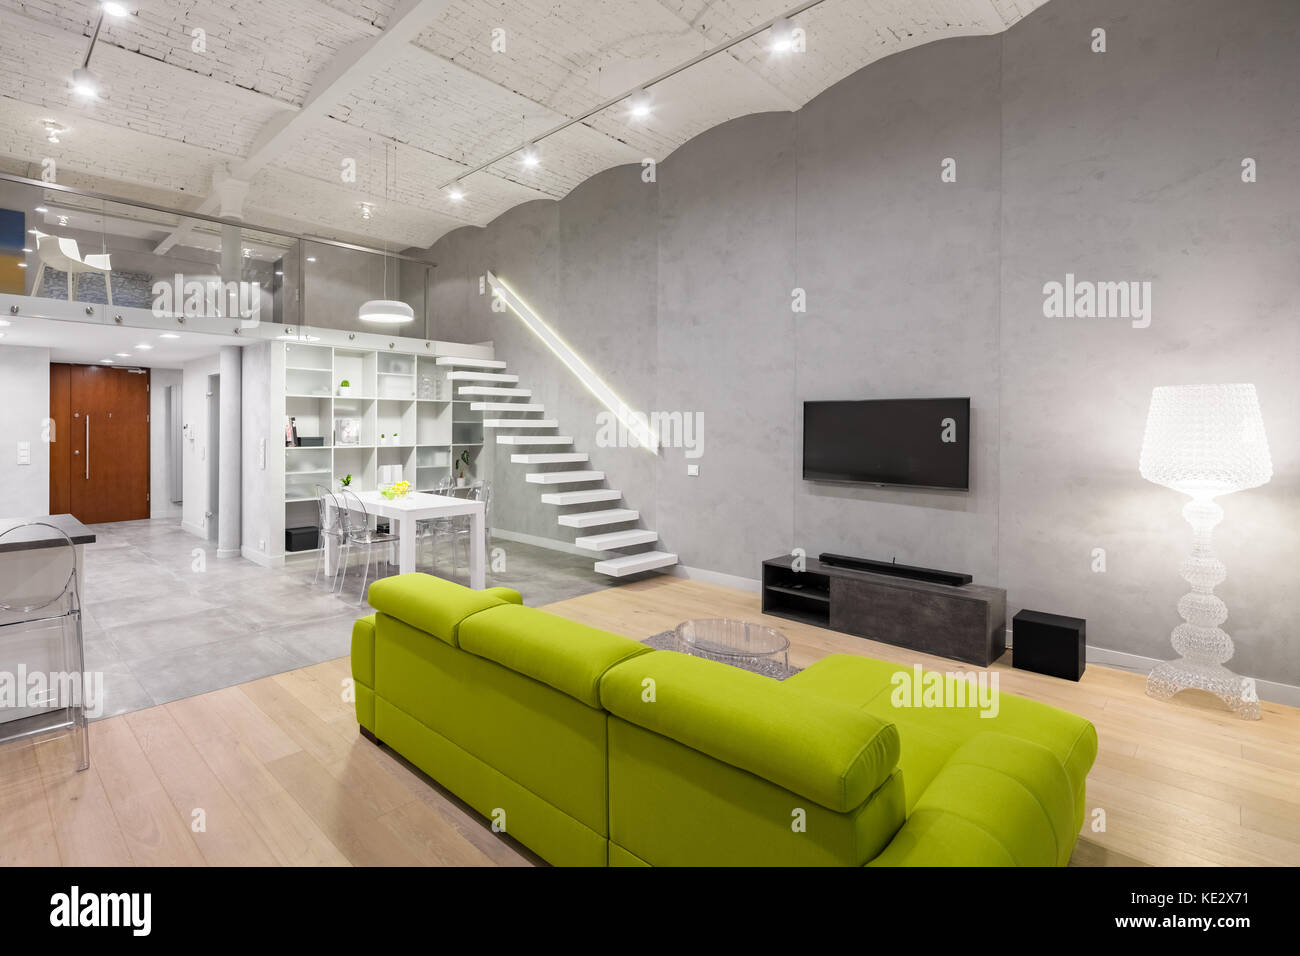 Home Interieur mit grünen Couch, TV und Mezzanine Stockfoto